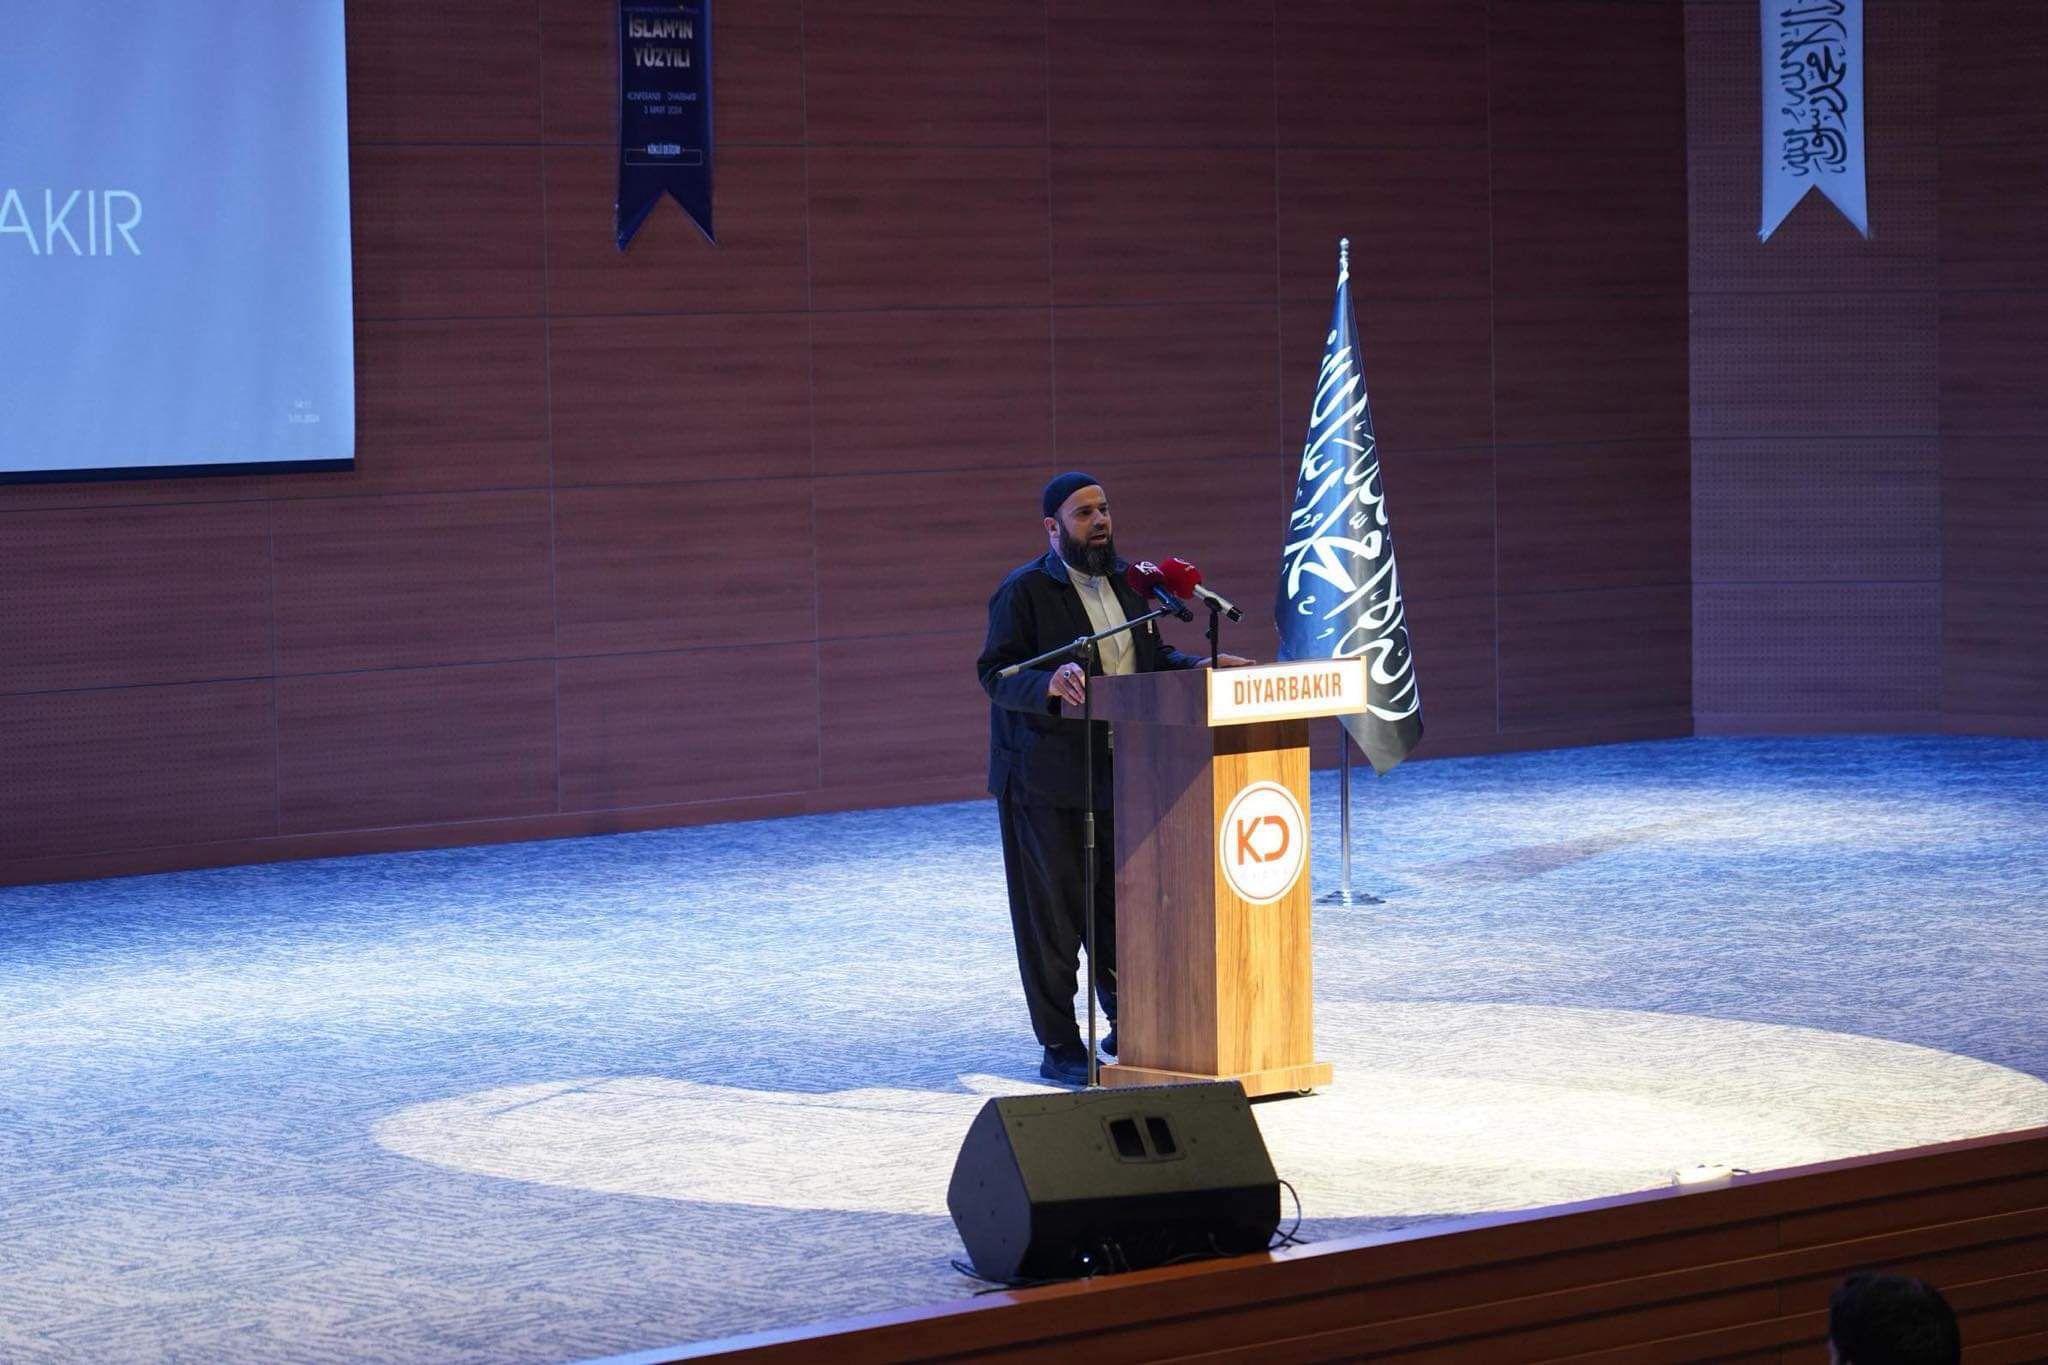 Köklü Değişim, Diyarbakır’da Düzenlediği Konferansta “Hilafet”i Konuştu-Nihat Çam.jpeg